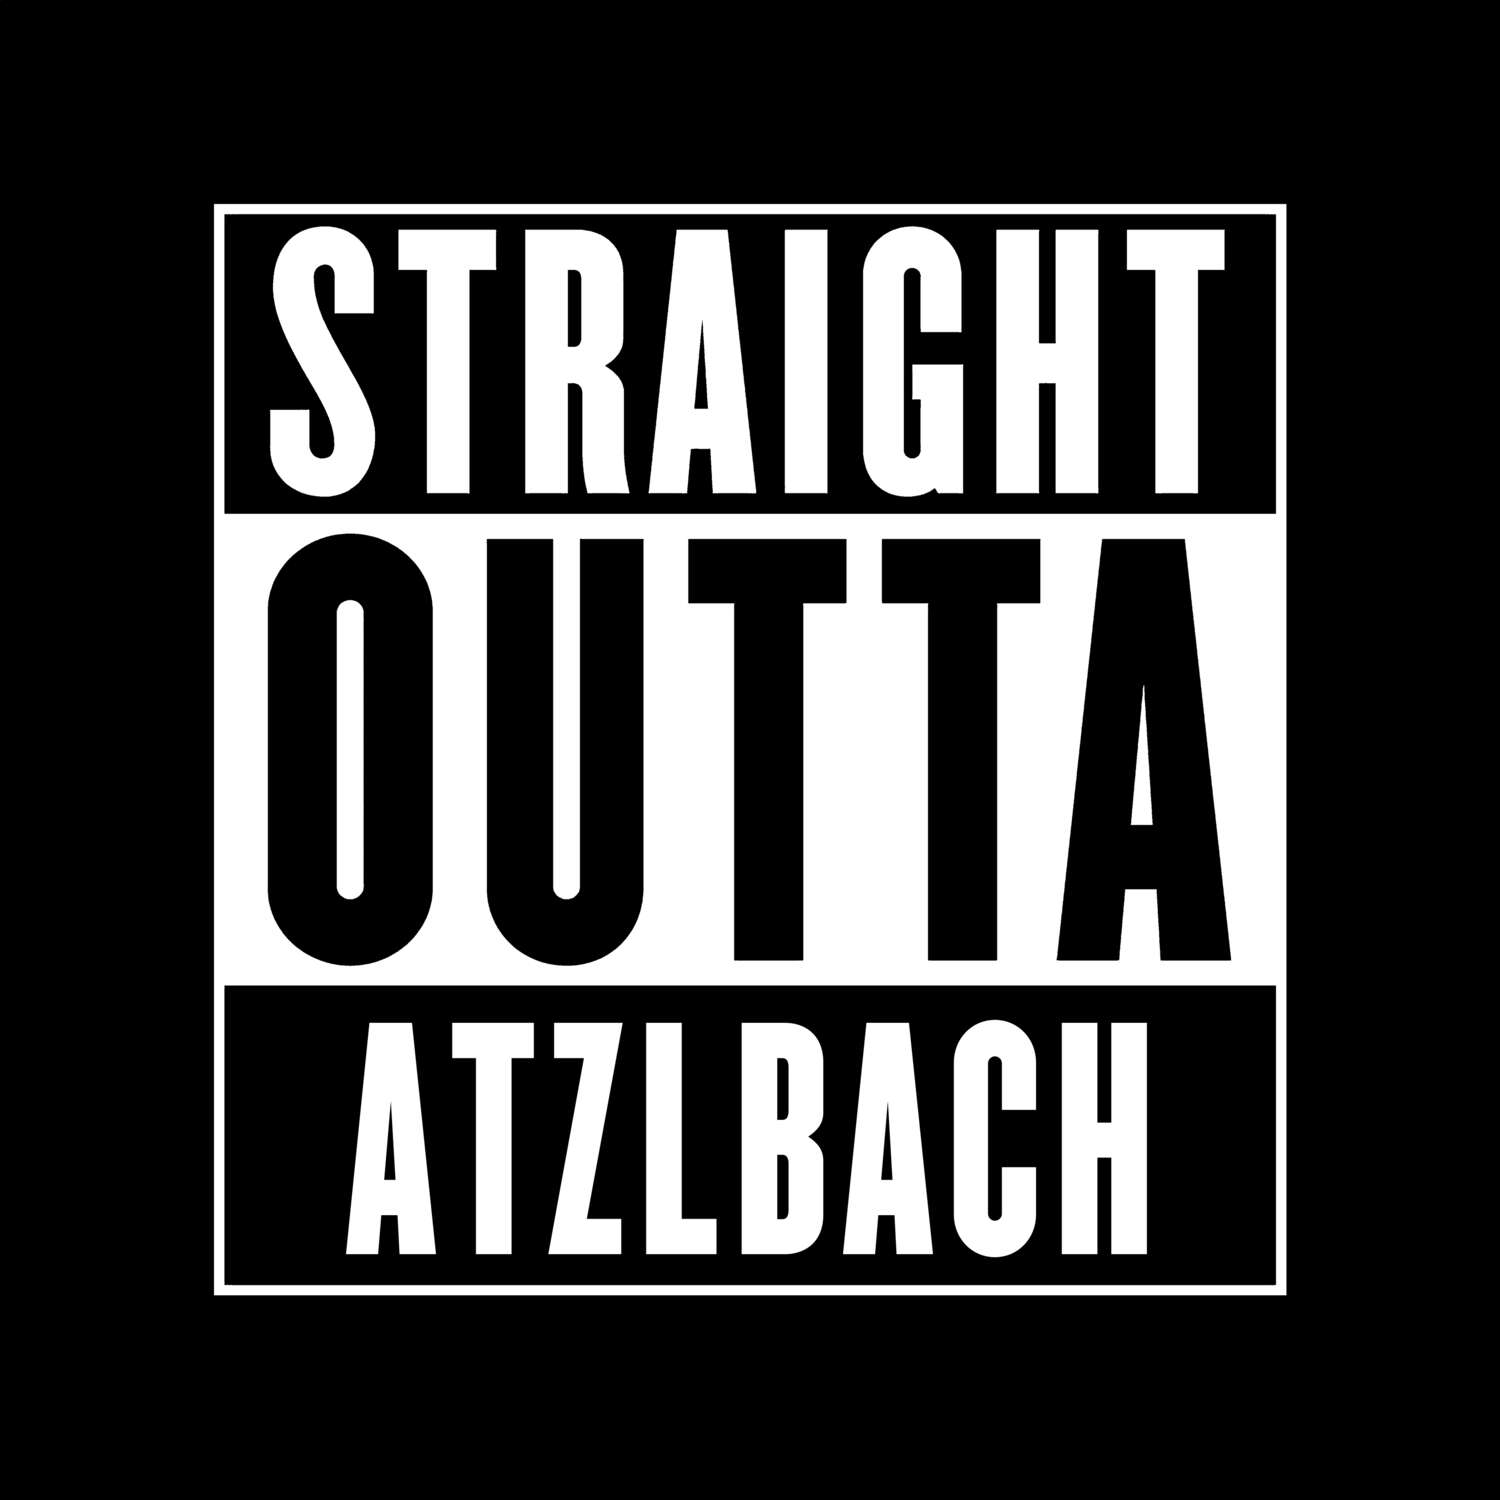 Atzlbach T-Shirt »Straight Outta«